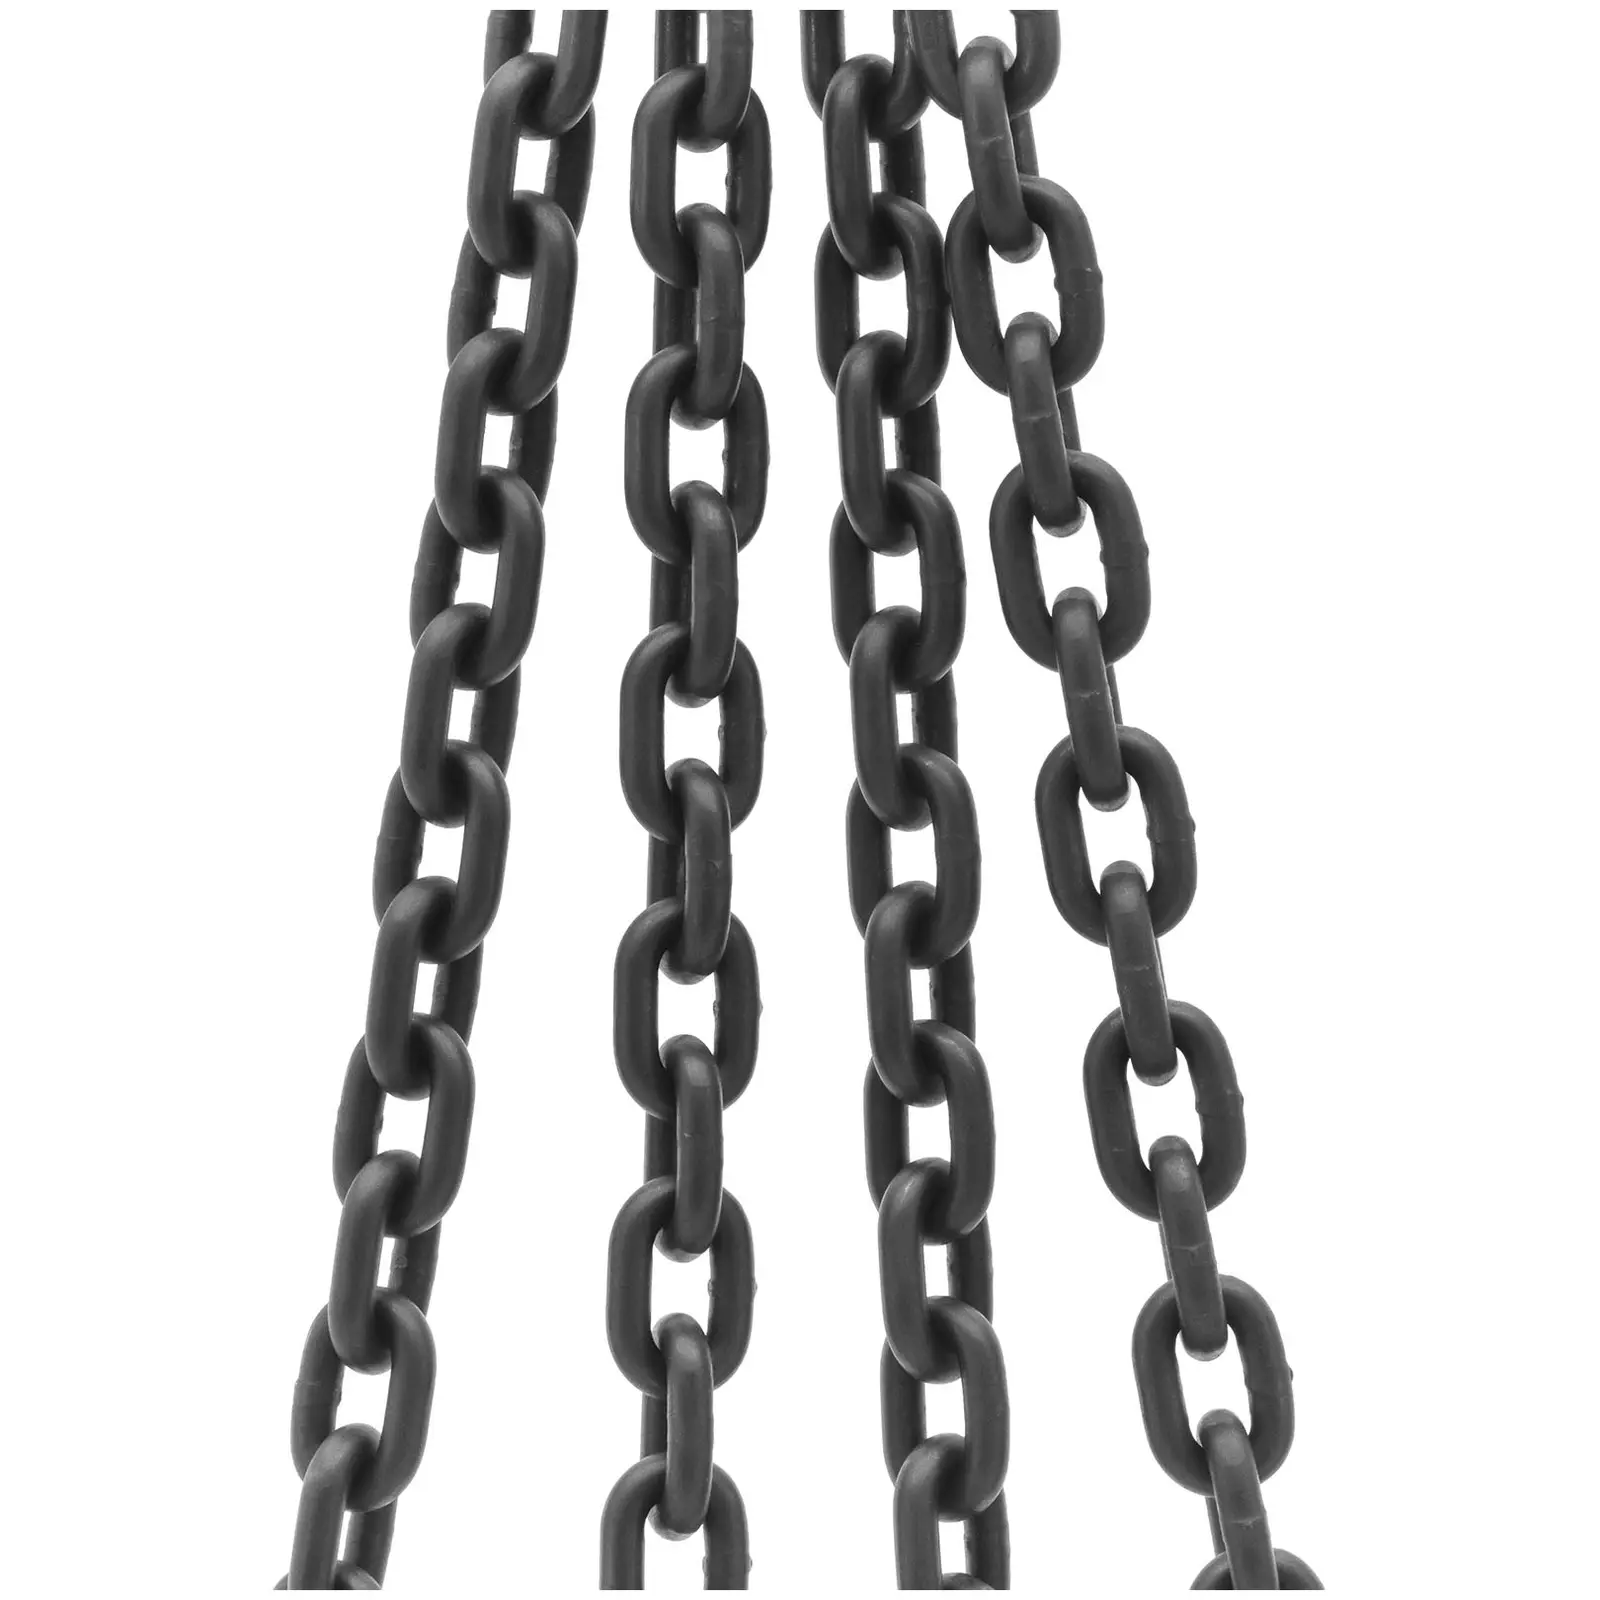 Zawiesie łańcuchowe - 5000 kg - 4 x 1,5 m - czarne/czerwone